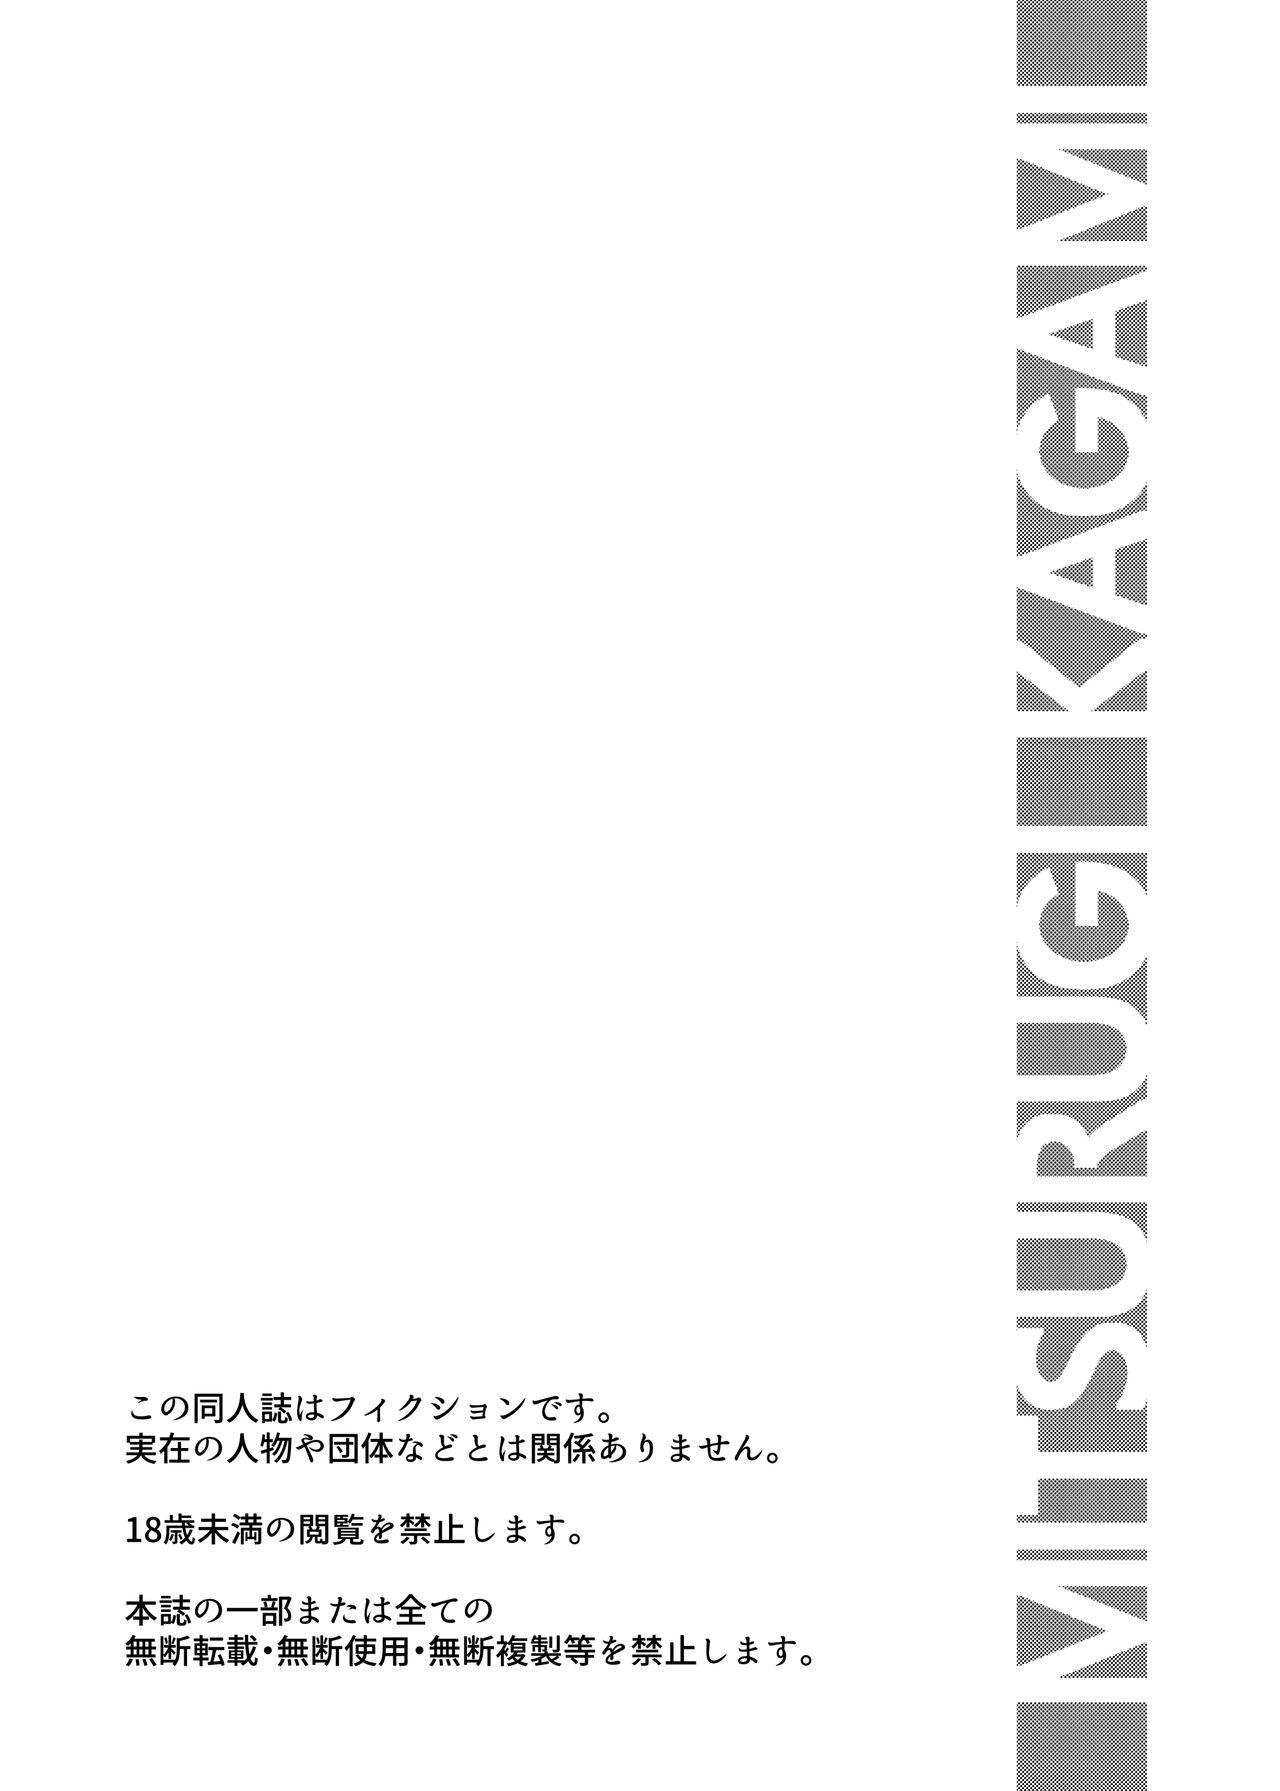 Peituda BANKEN - Kankyou Chiankyoku Sousakan Mitsurugi Kagami - Original Sola - Page 3